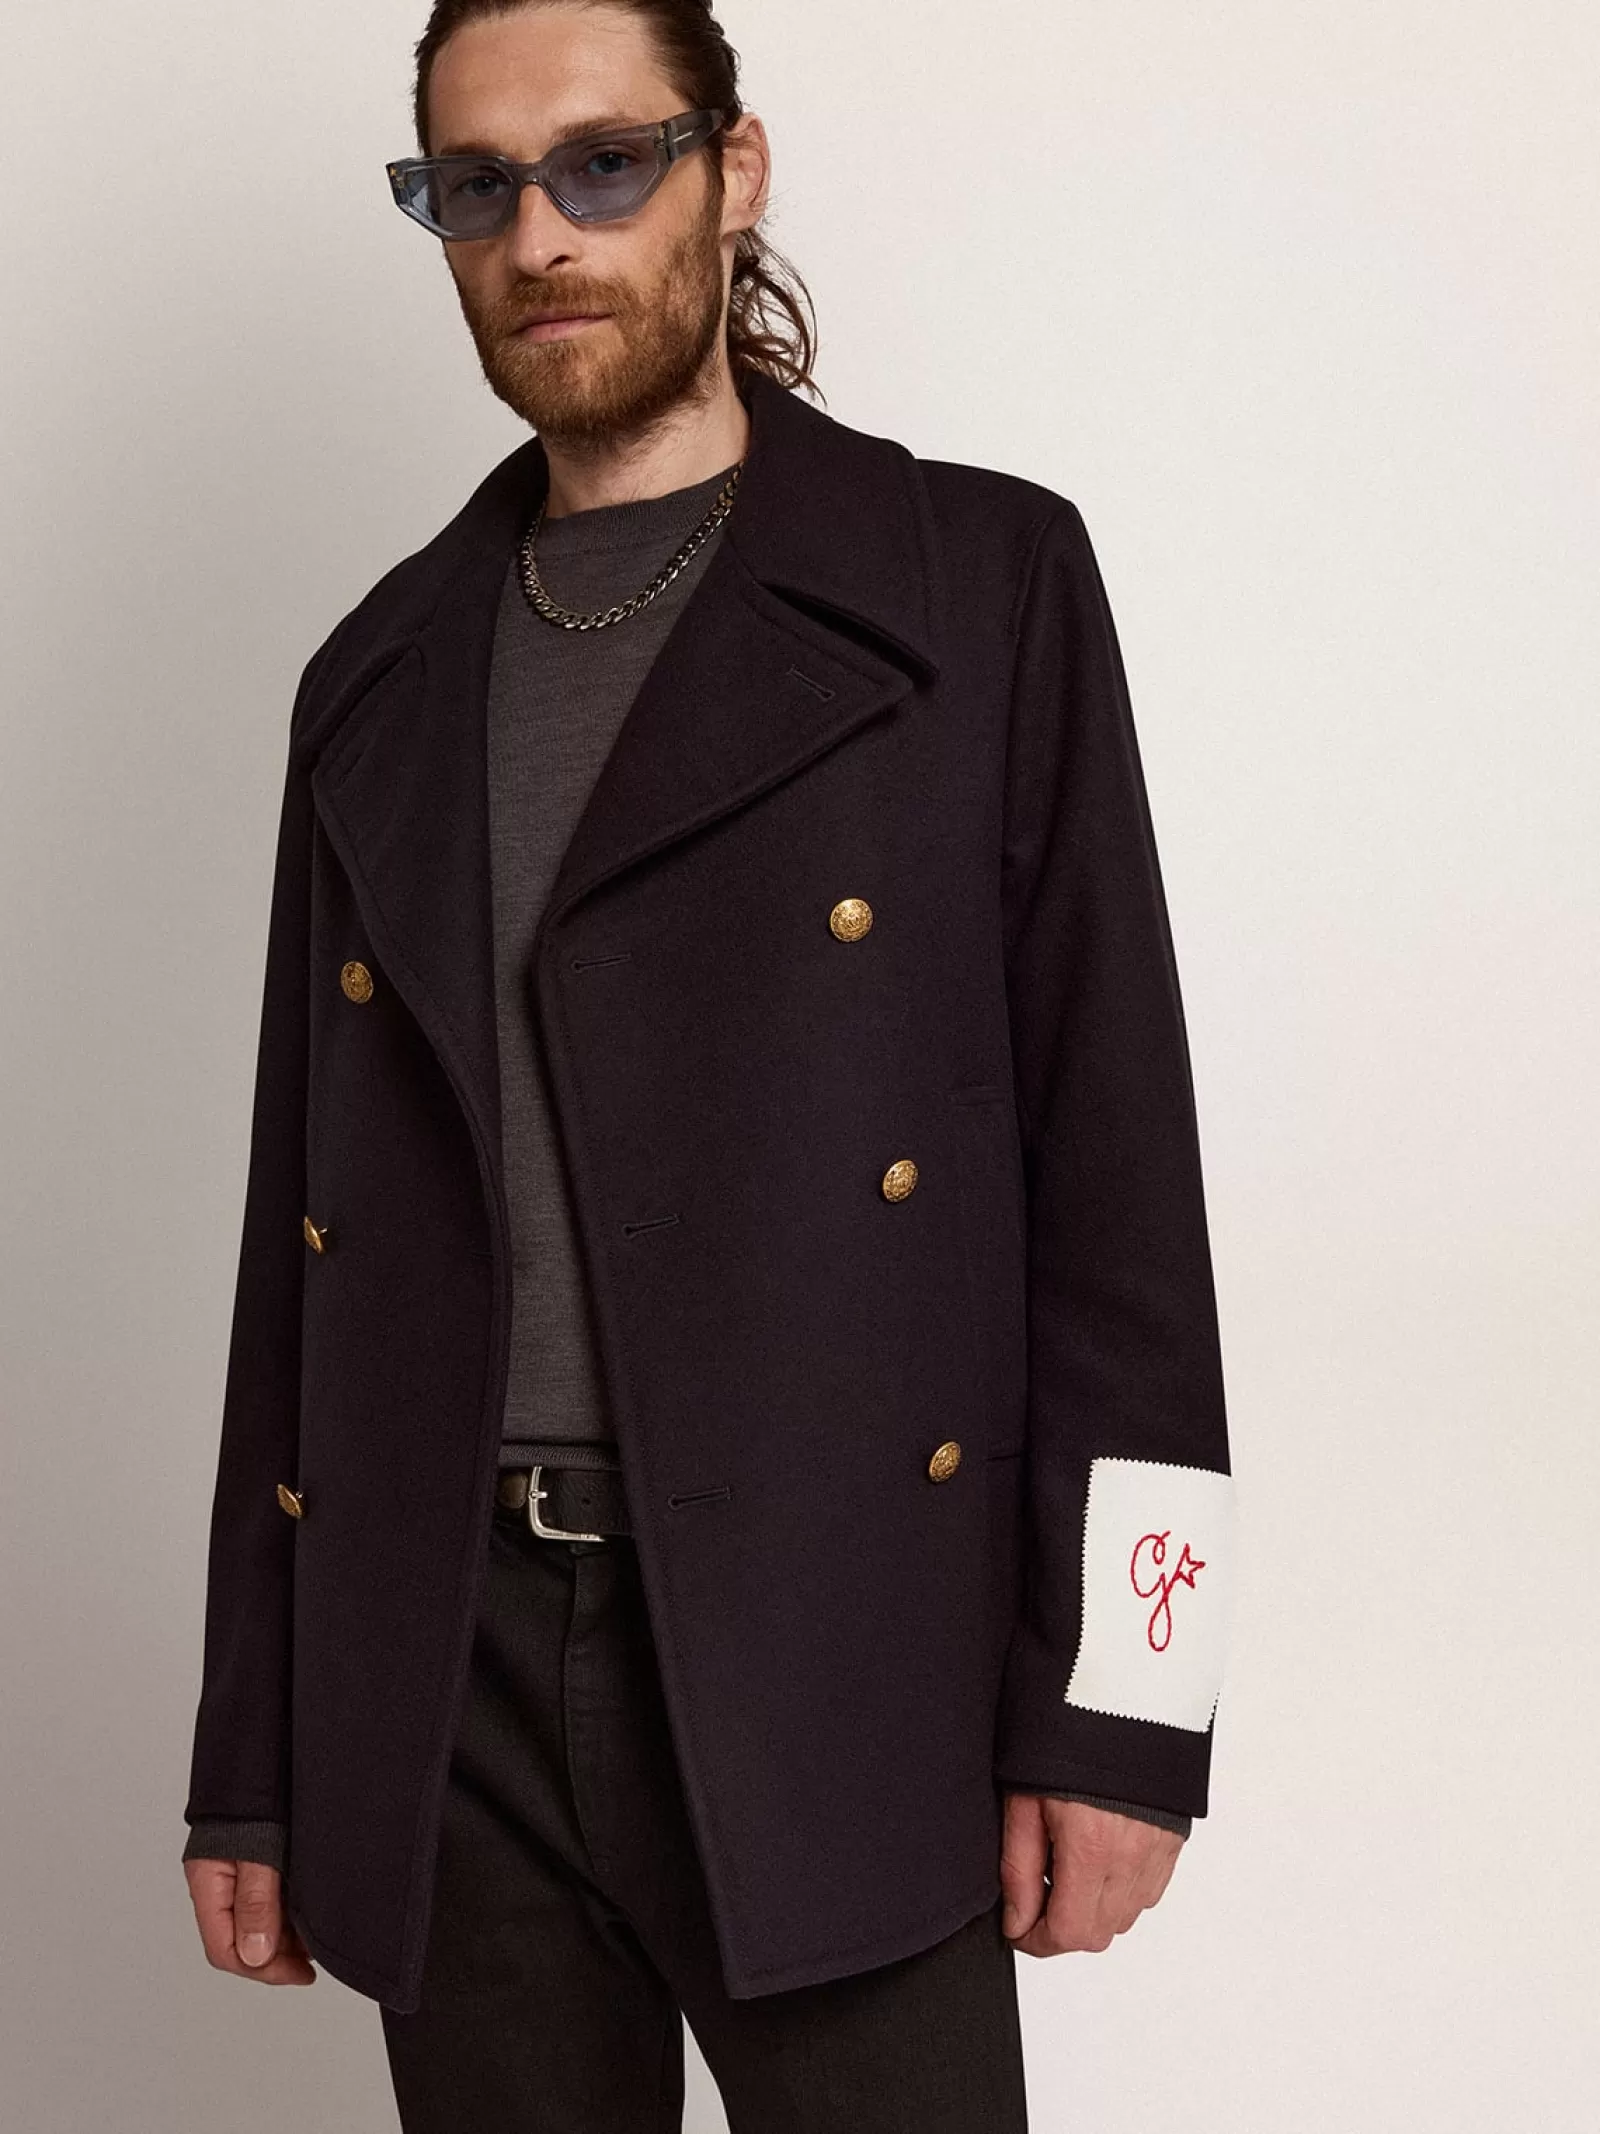 Manteau croisé homme en laine bleu foncé avec boutons dorés | Golden Goose Cheap